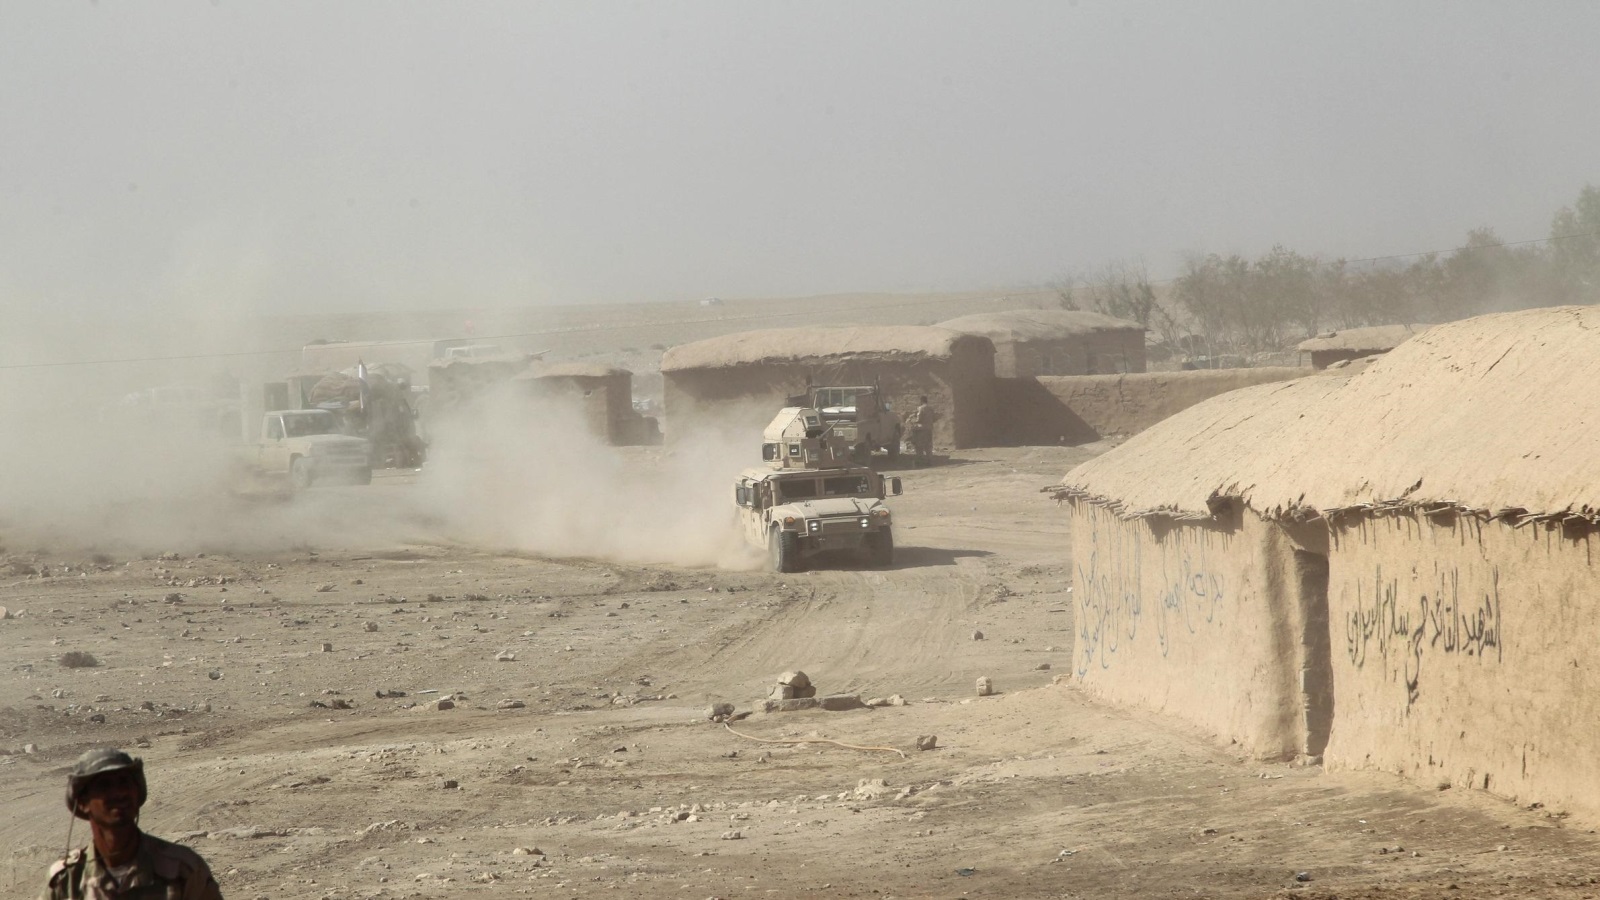 ‪القوات العراقية تشتبك مع مقاتلي تنظيم الدولة جنوب الموصل‬  القوات العراقية تشتبك مع مقاتلي تنظيم الدولة جنوب الموصل (رويترز)